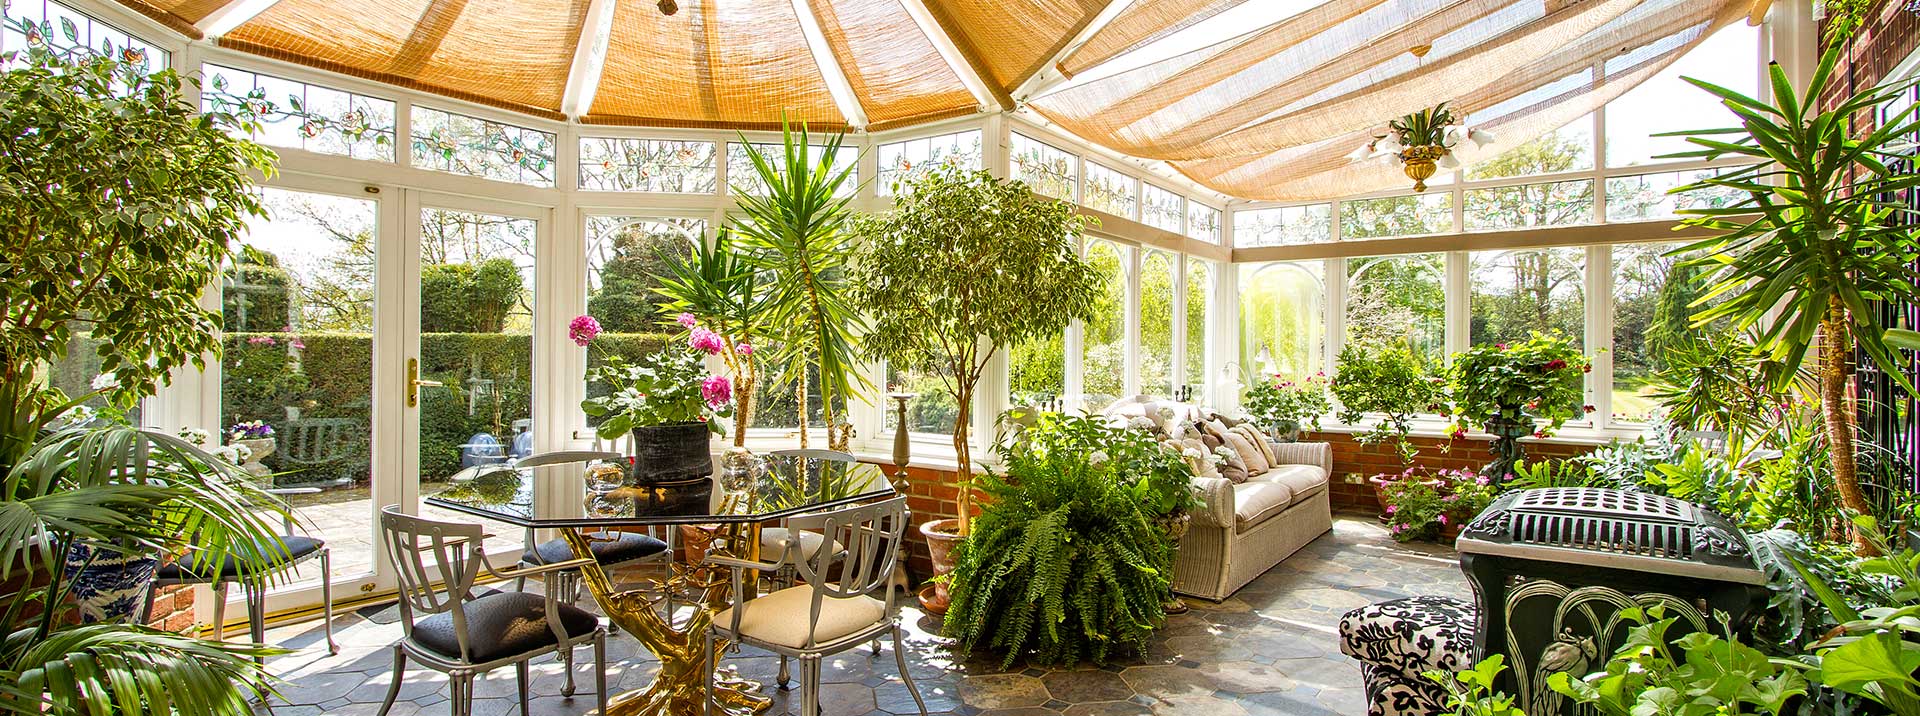 Зимний сад на балконе в квартире — как сделать?